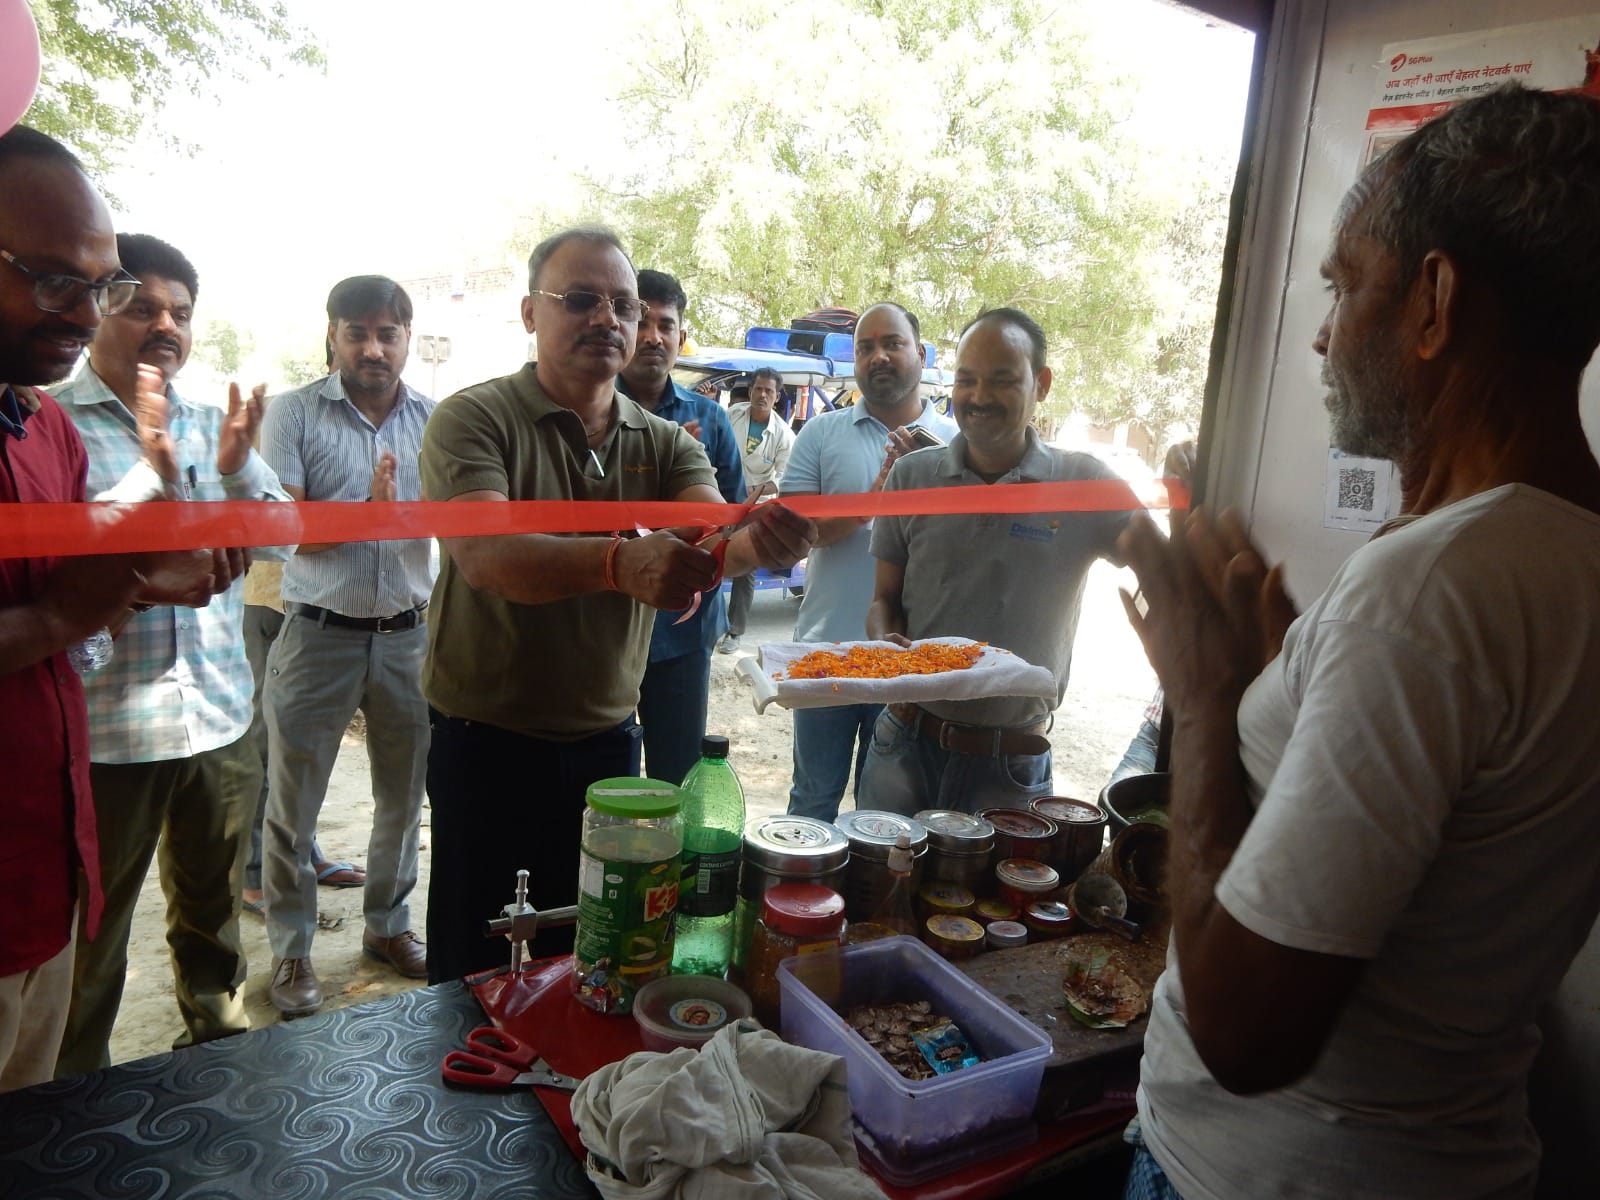 सीतापुर: ग्राम परिवर्तन परियोजना के तहत फास्टफूड एवं किराना दुकानों का उद्घाटन